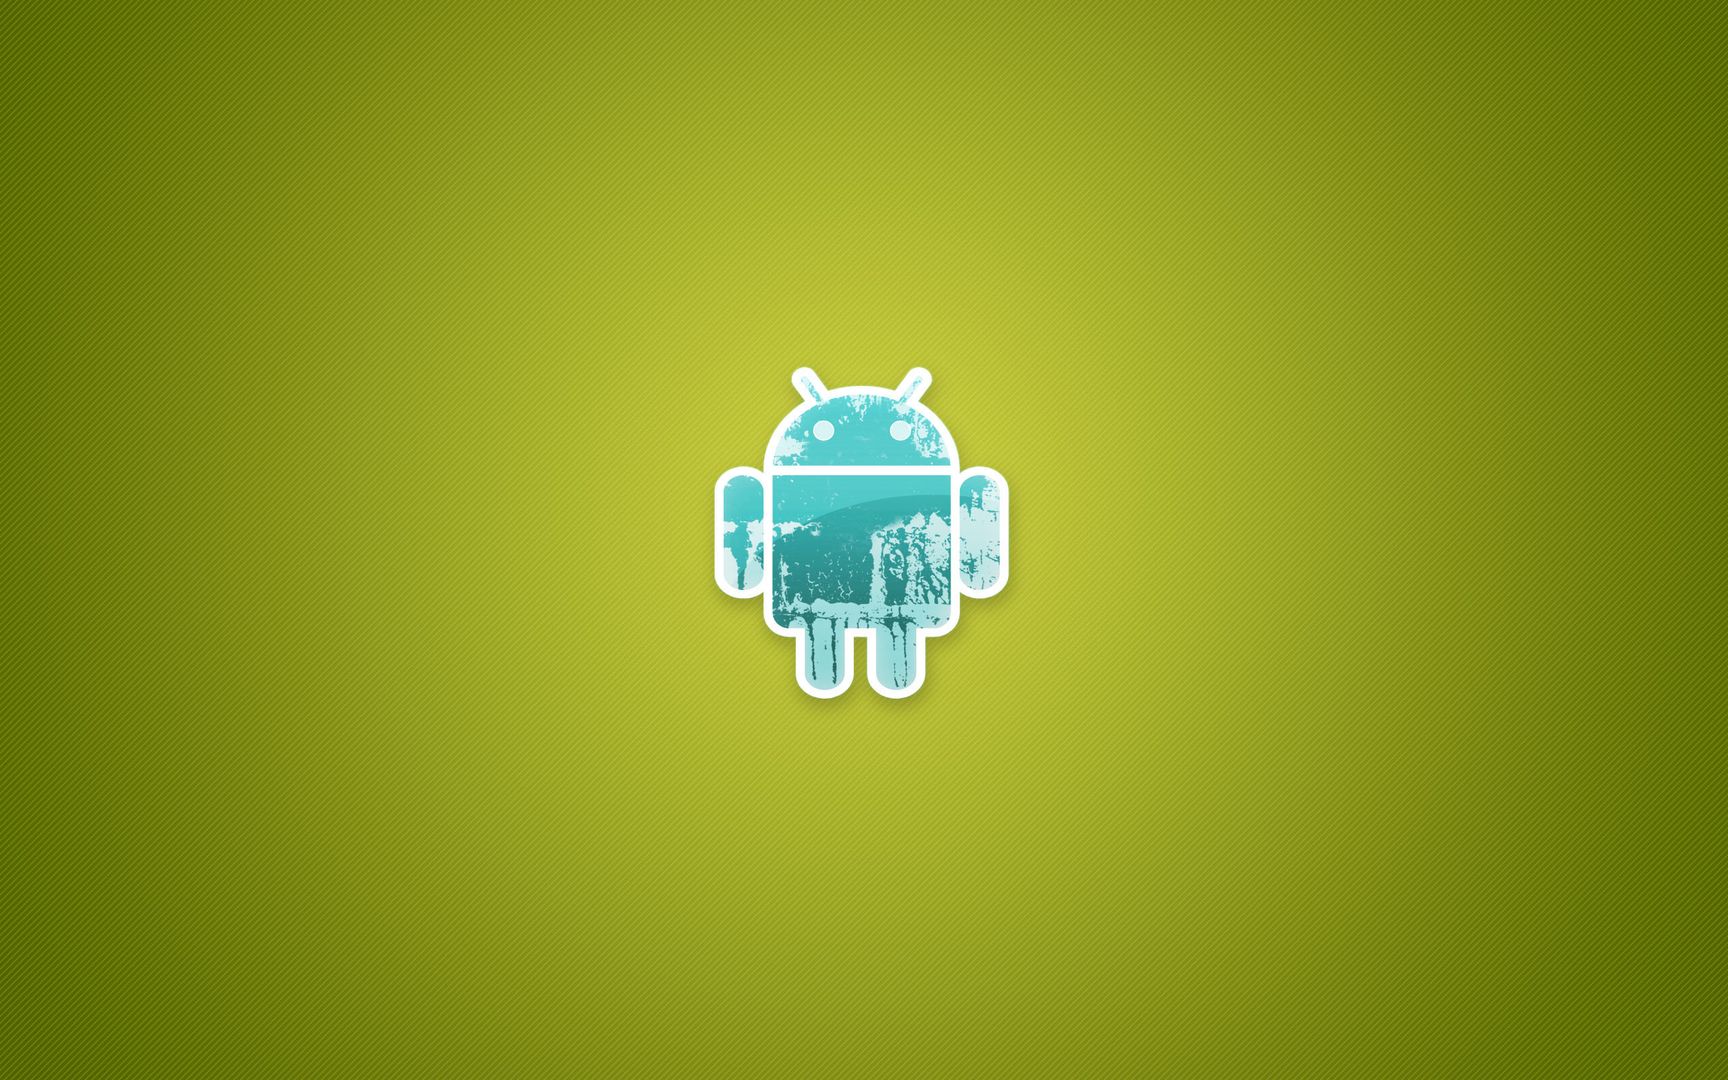 Android安卓系统环保绿色背景简约风格高清桌面大图